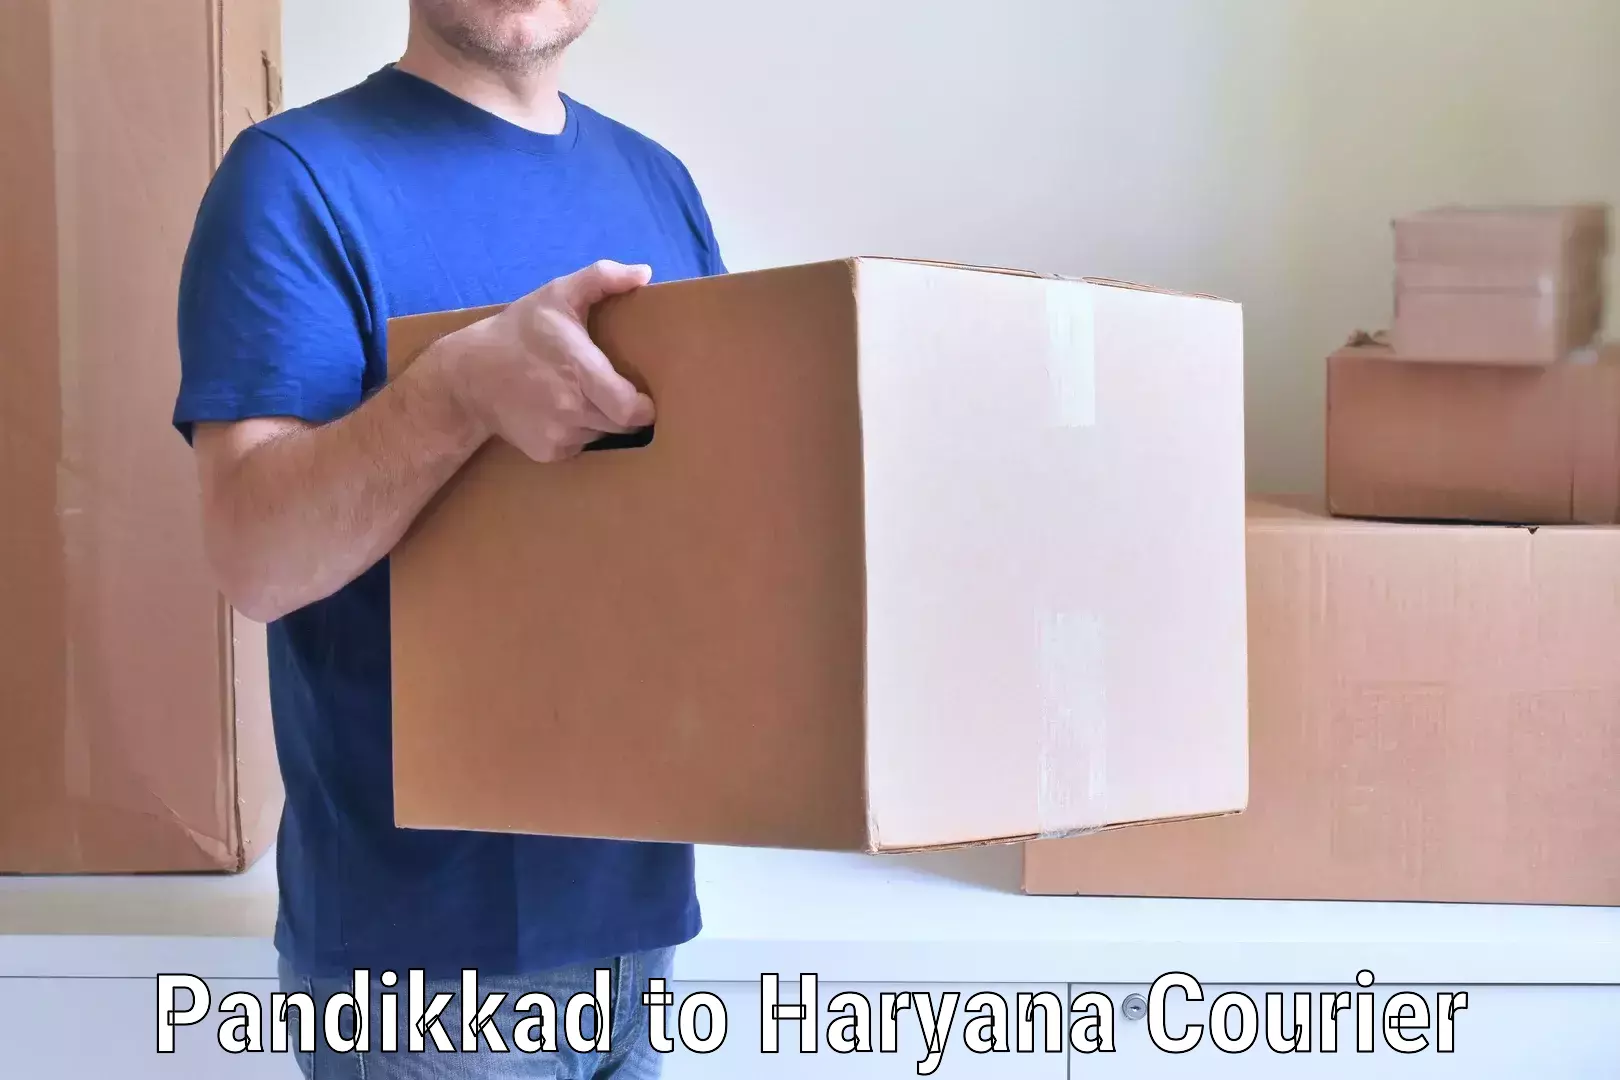 Furniture moving experts Pandikkad to Chirya